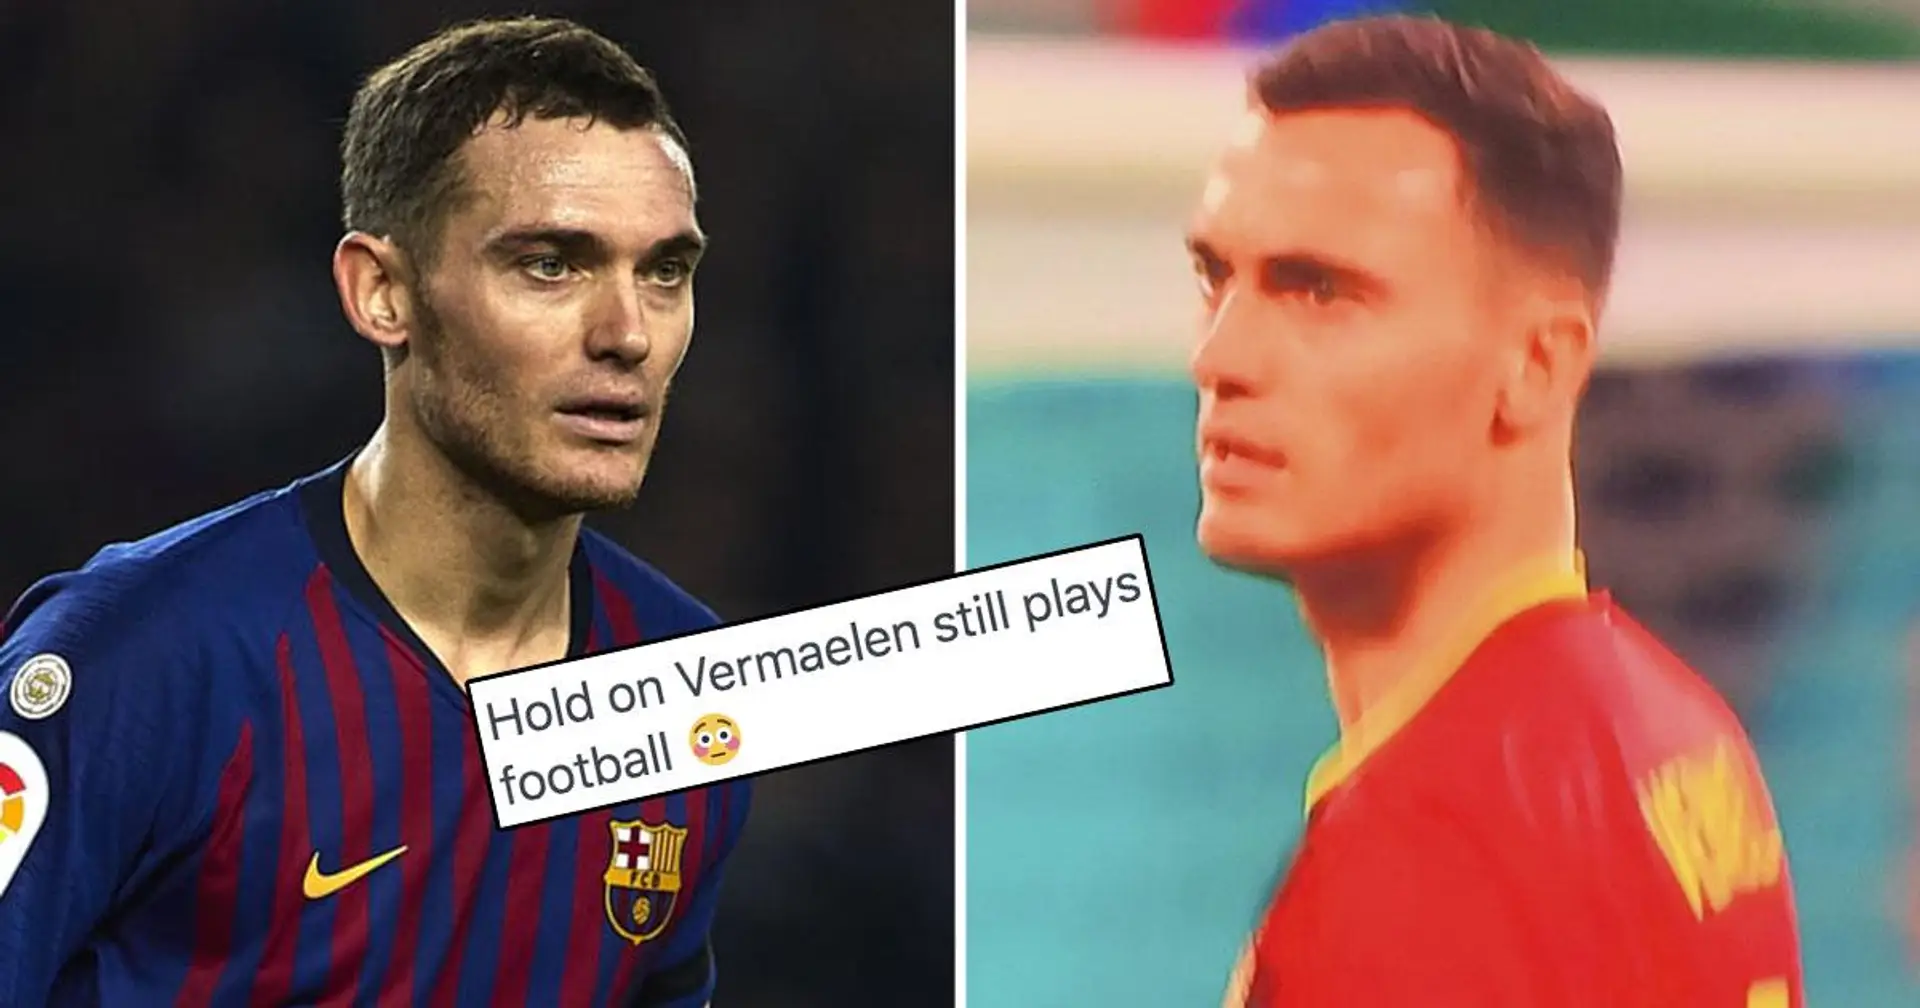 "Est-il toujours en vie?": Vermaelen, 35 ans, fait une surprenante apparition à l'Euro 2020